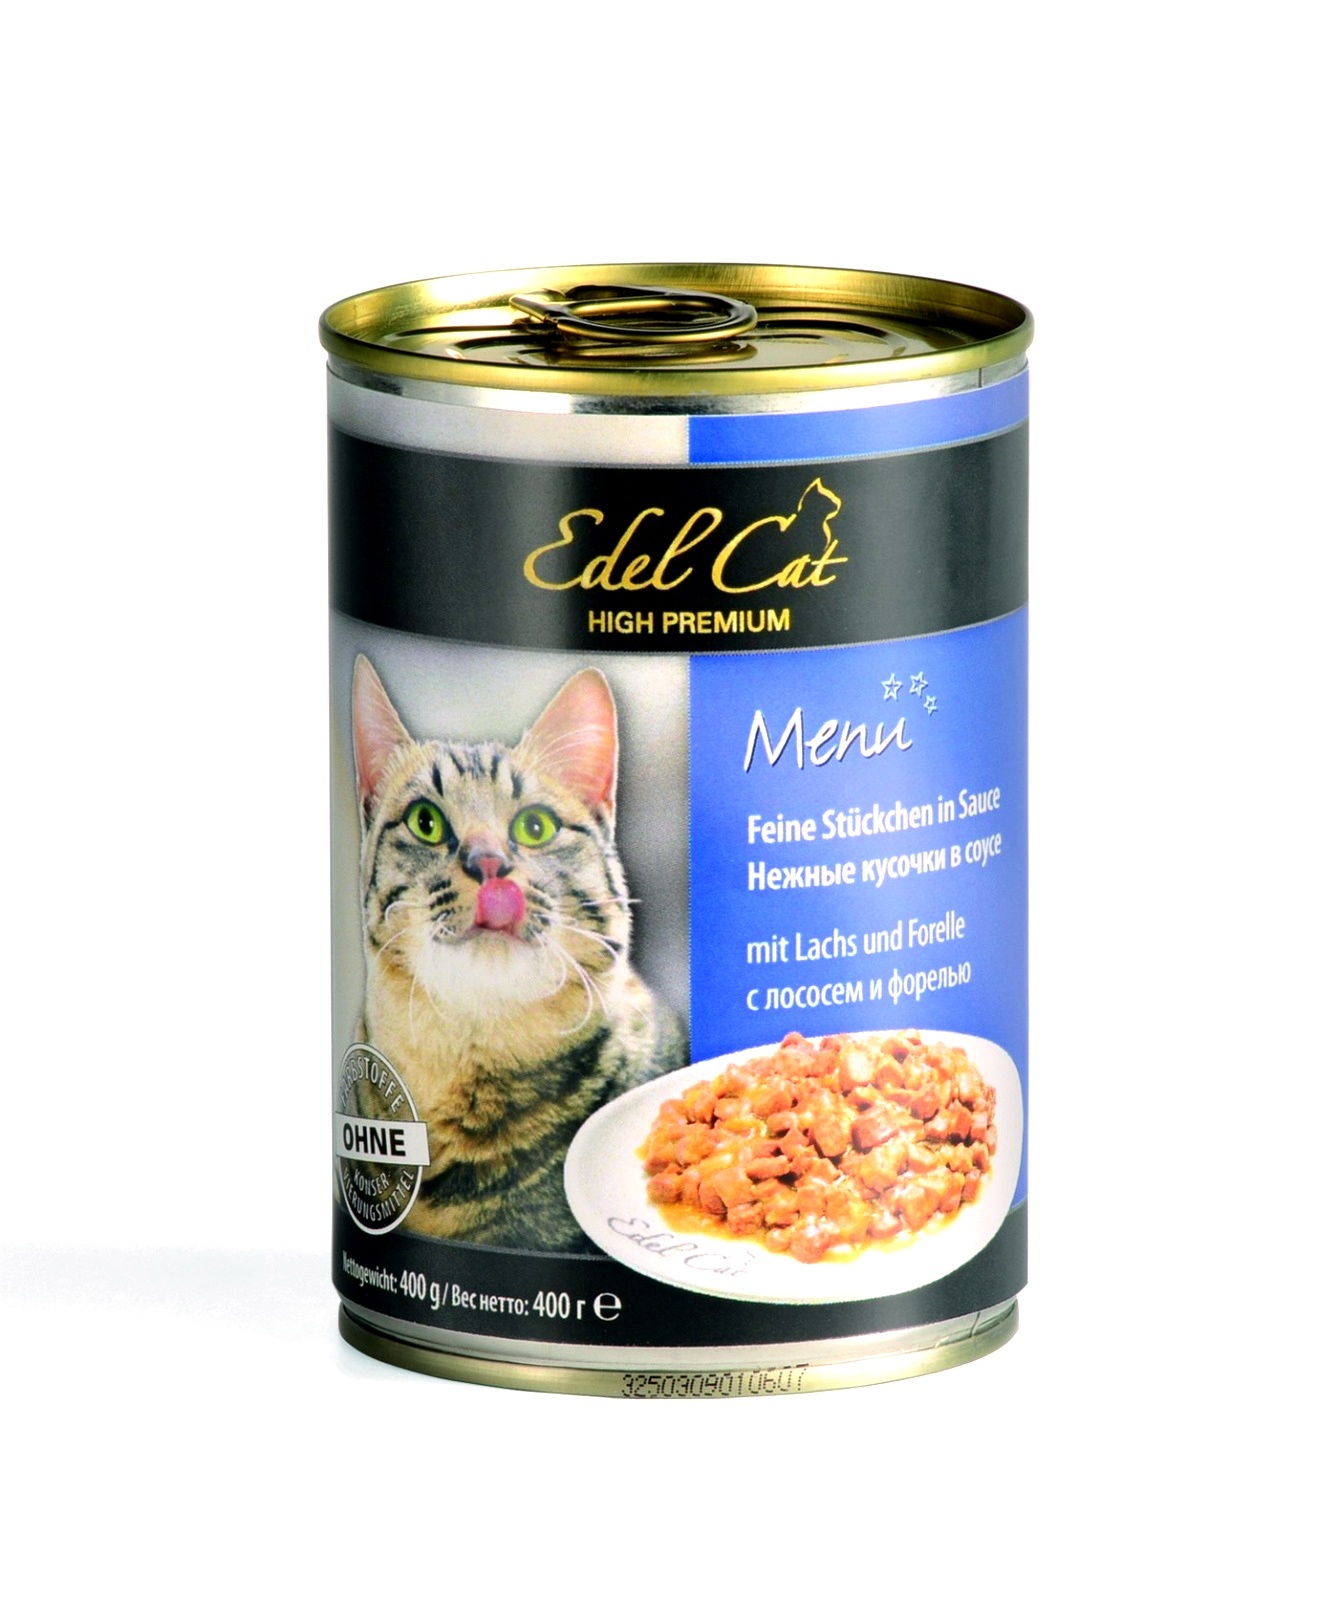 Edel Cat нежные кусочки в соусе с лососем и форелью (400 г)